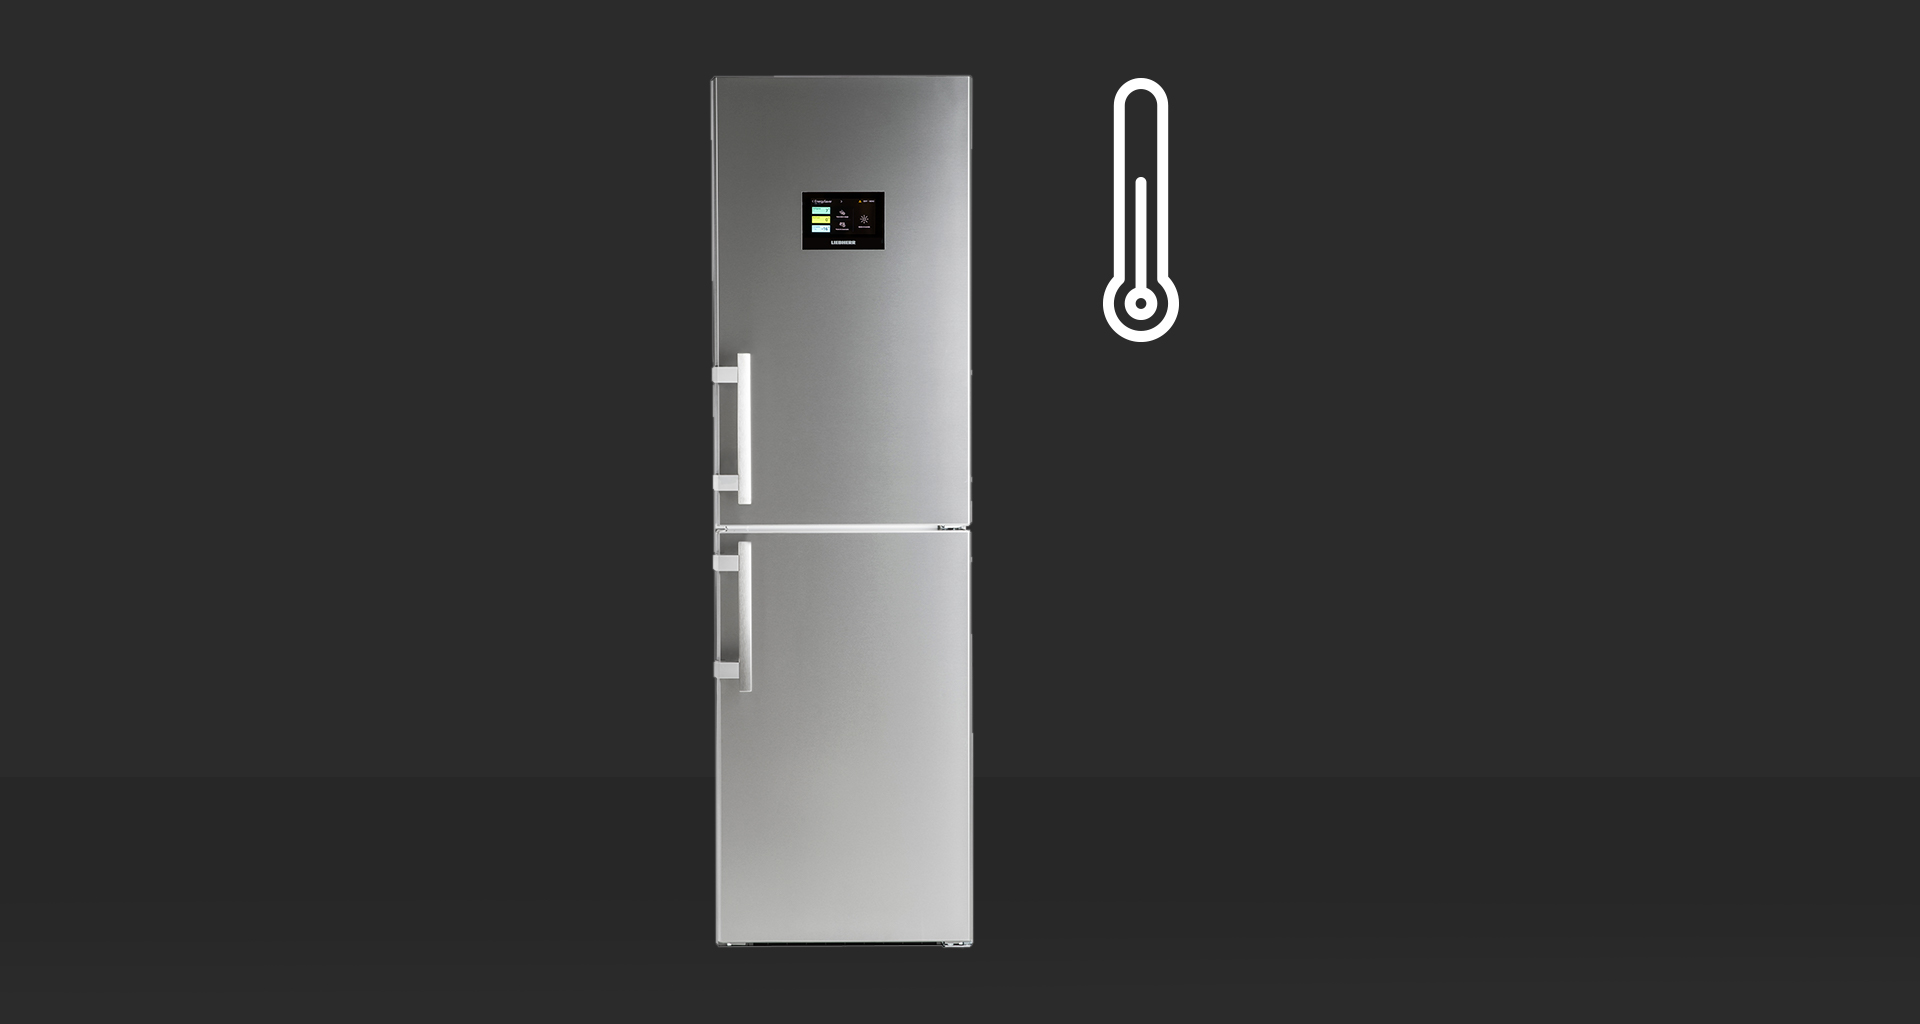 Cómo mantener la temperatura perfecta del frigorífico